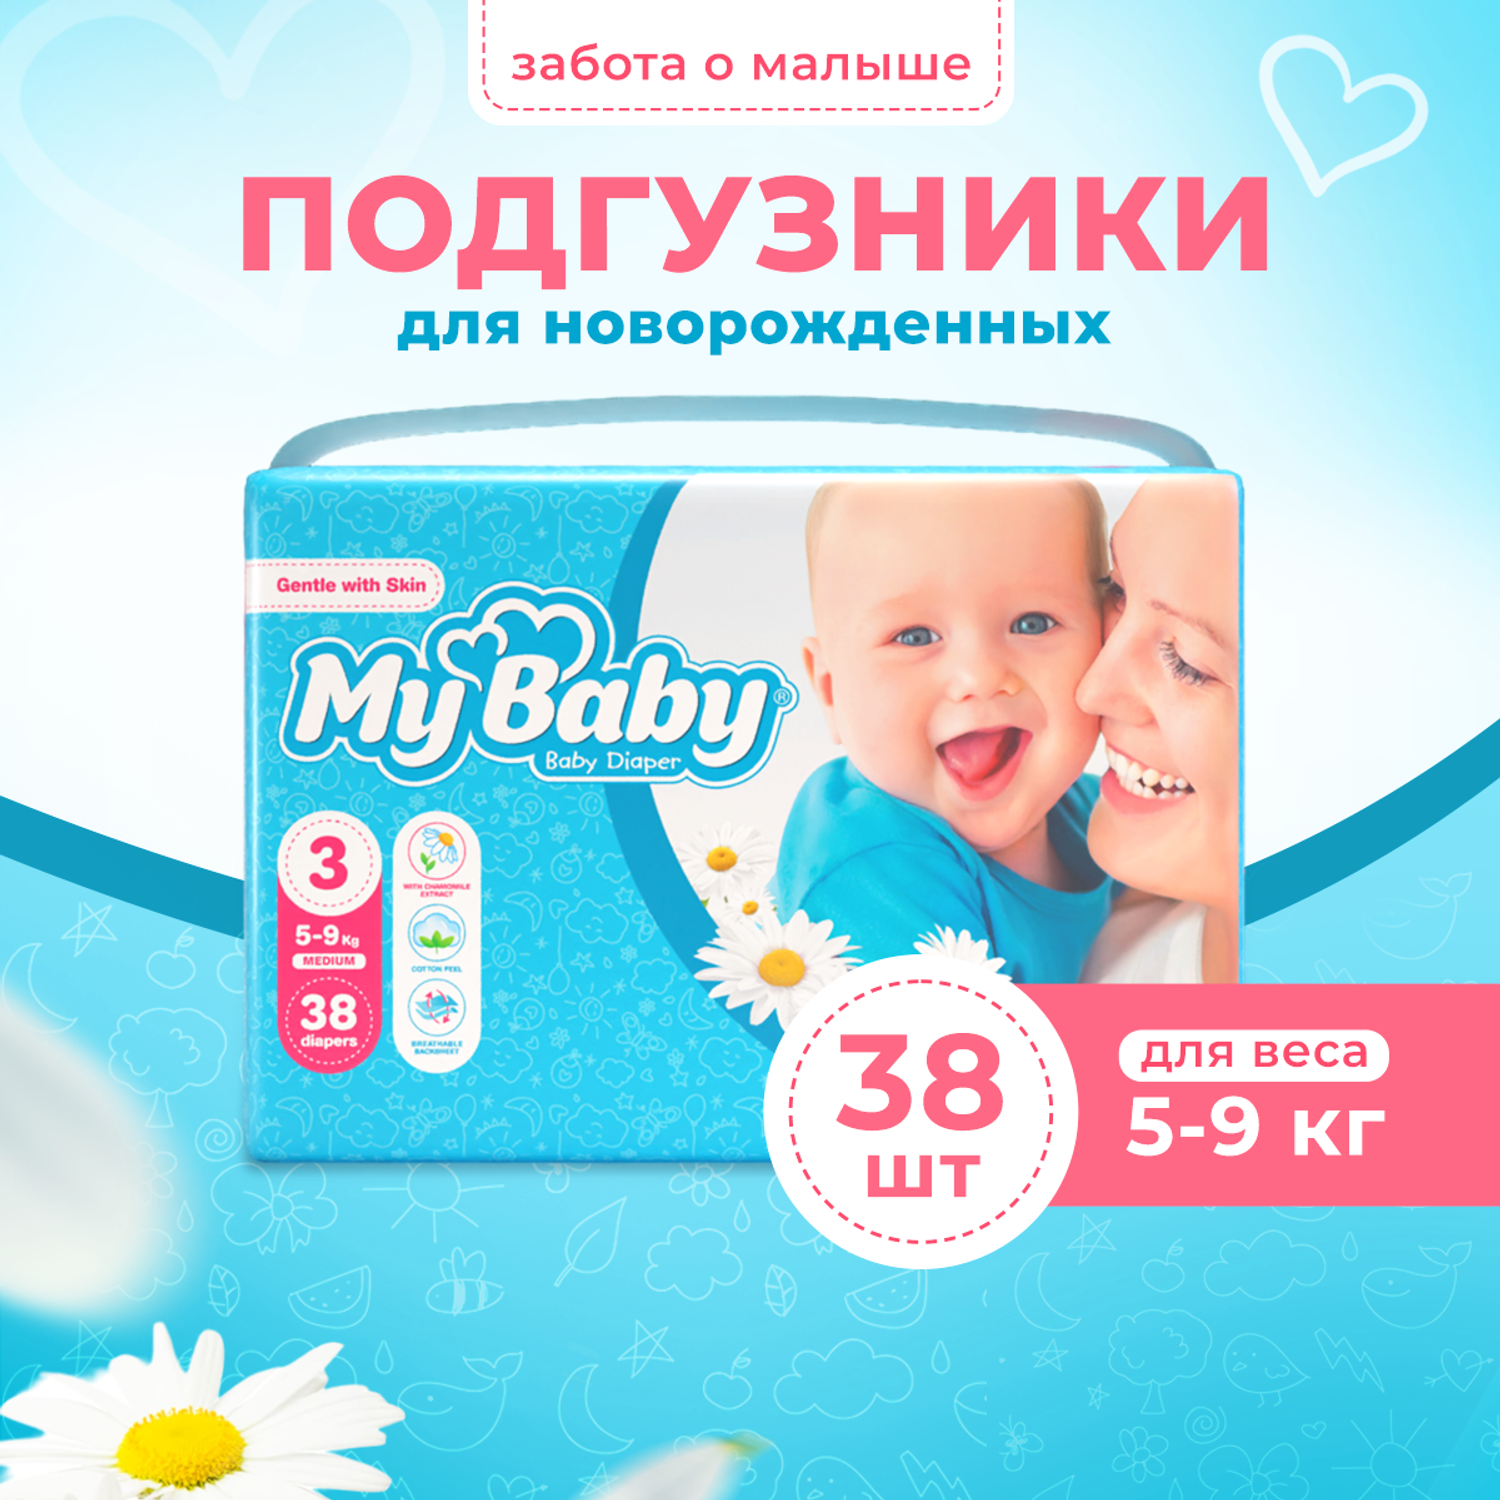 Подгузники My baby Baby diaper Economy размер 3 5-9 кг - фото 1